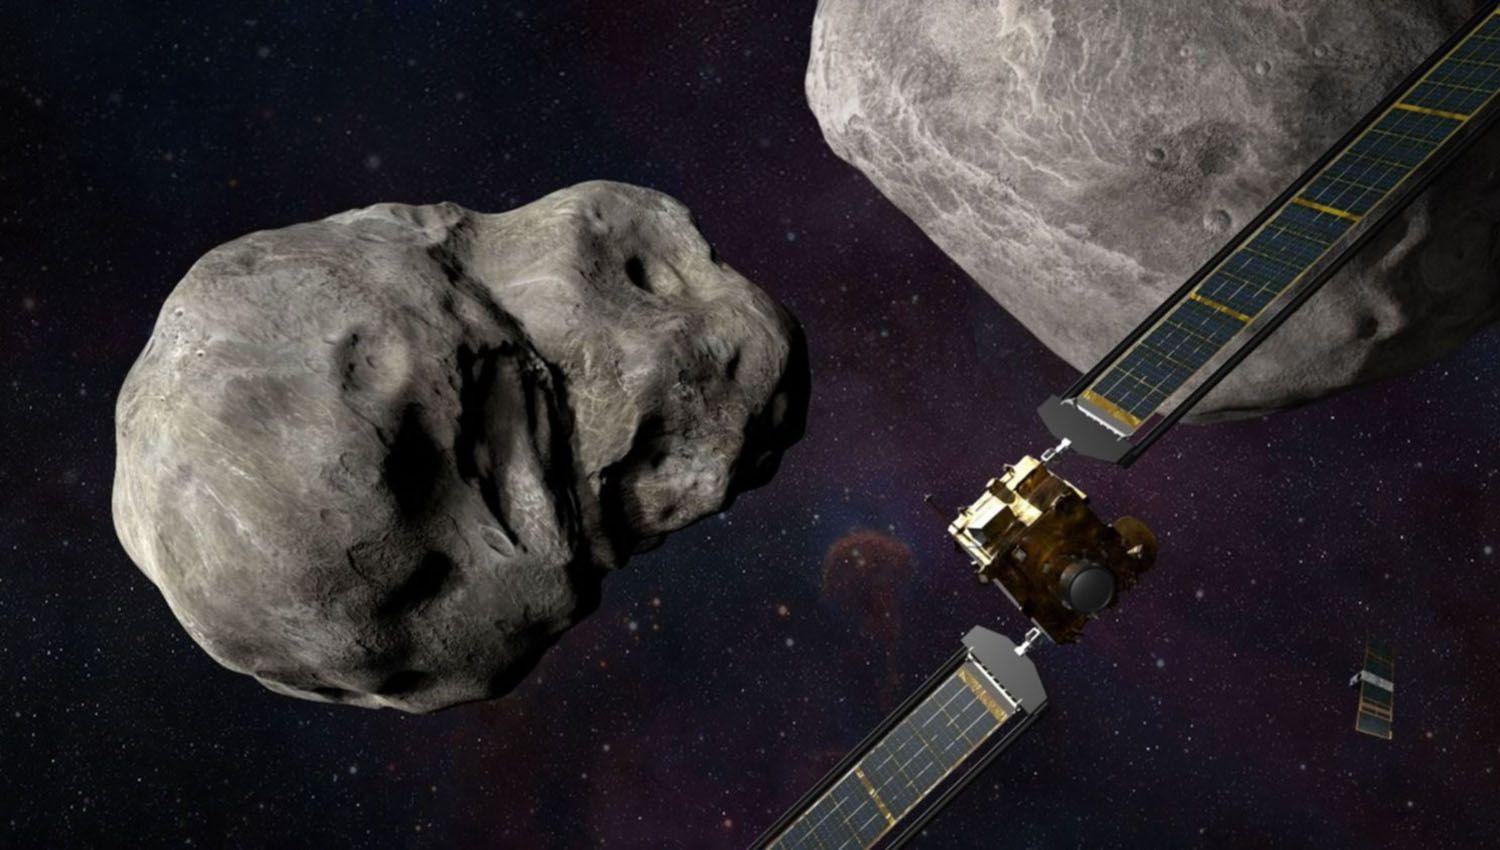 Estrellaraacuten una nave espacial de la NASA contra un asteroide como una ldquodefensa planetariardquo